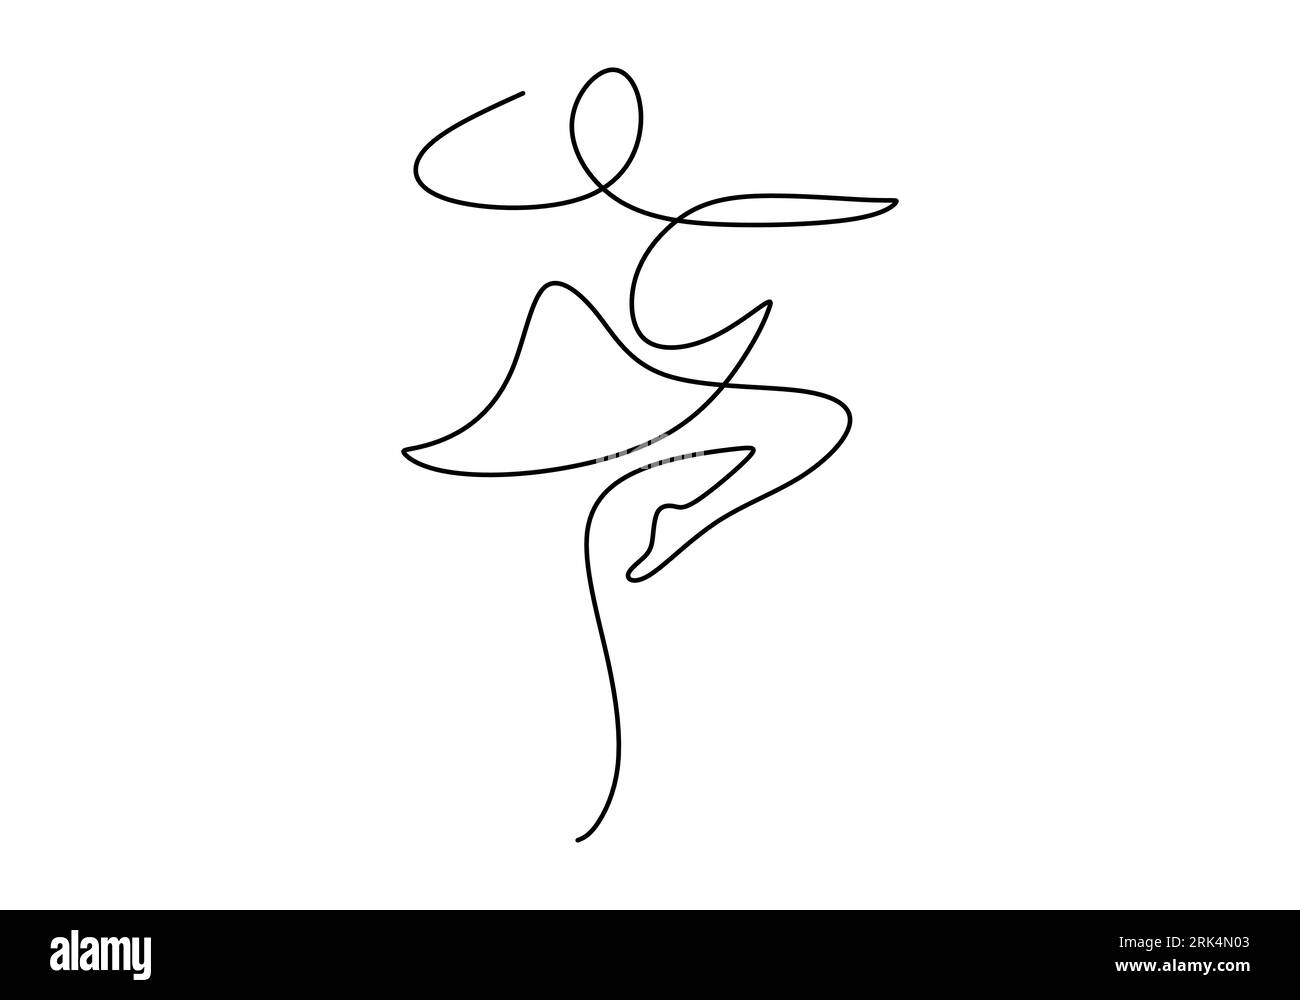 Une ligne de danse ballerine isolée sur fond blanc. Dessin à la main d'une seule ligne continue. Illustration de Vecteur